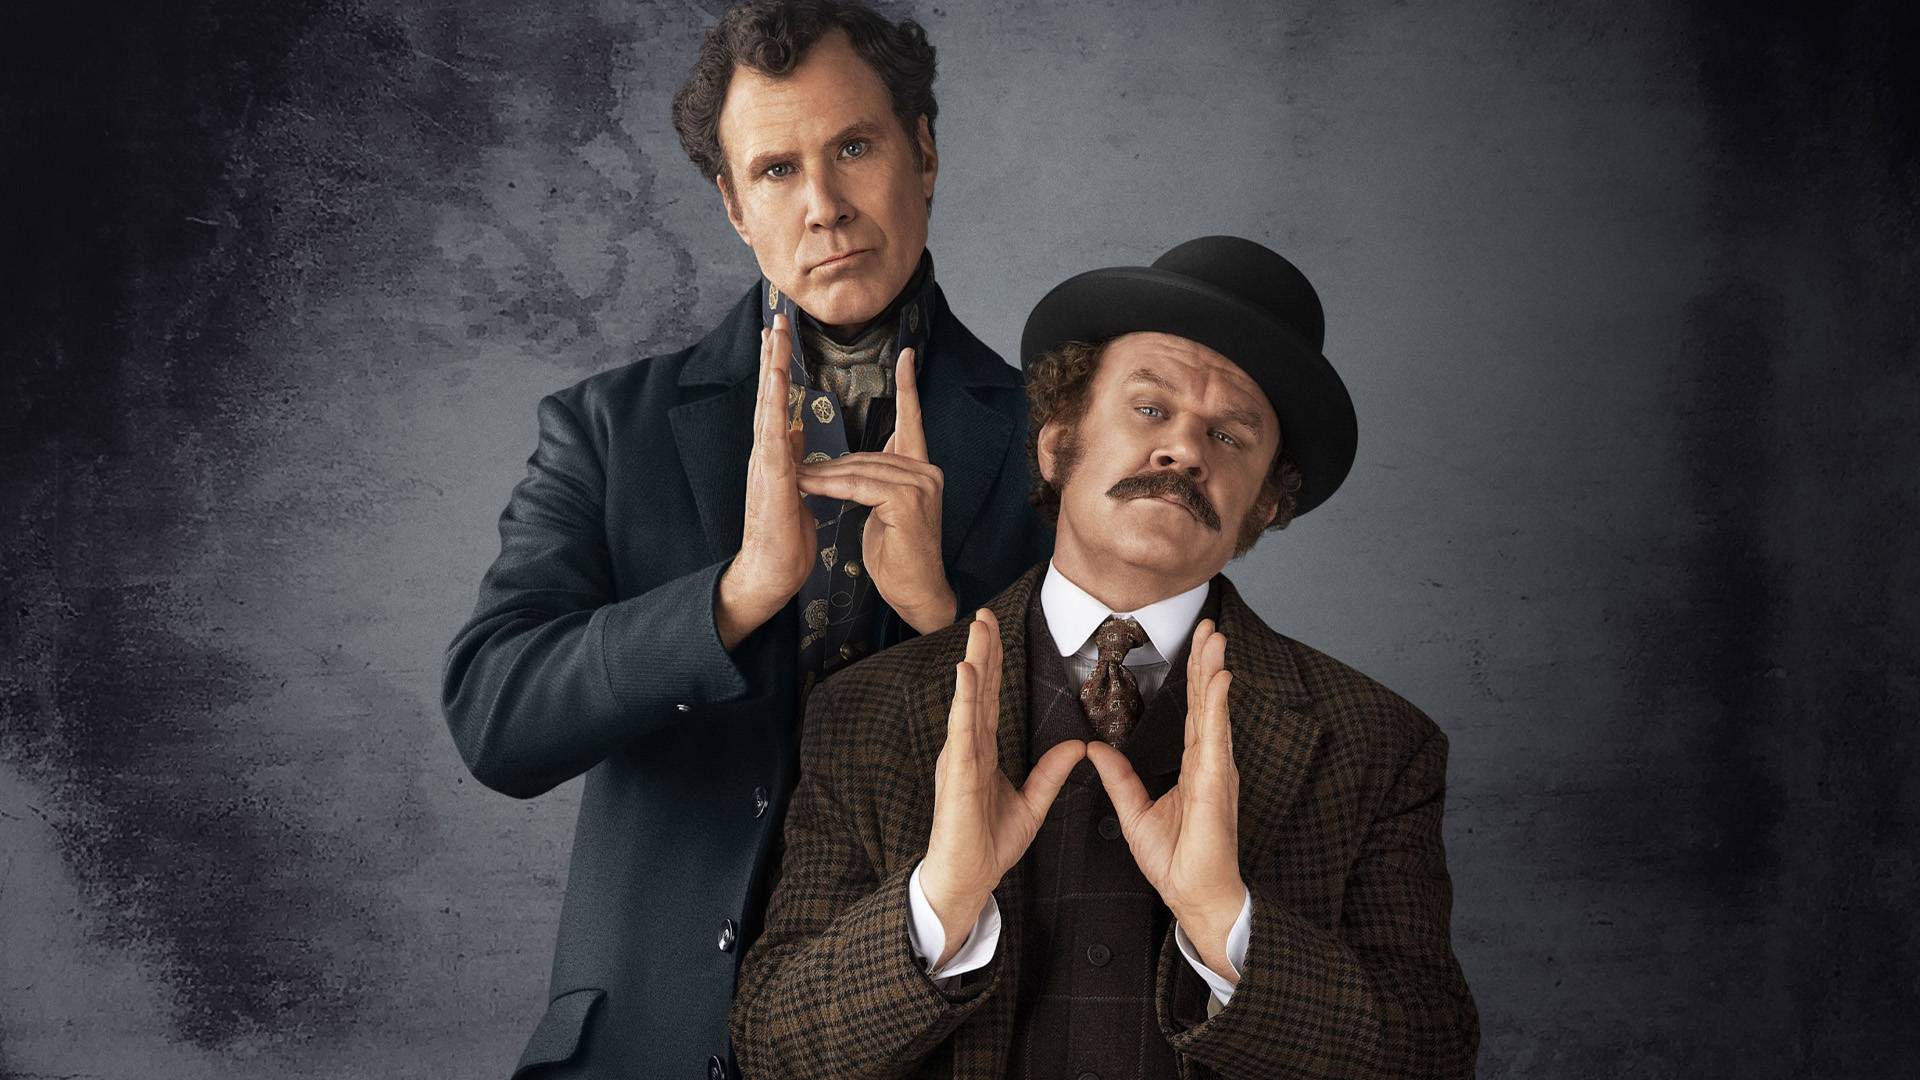 Holmes ve Watson